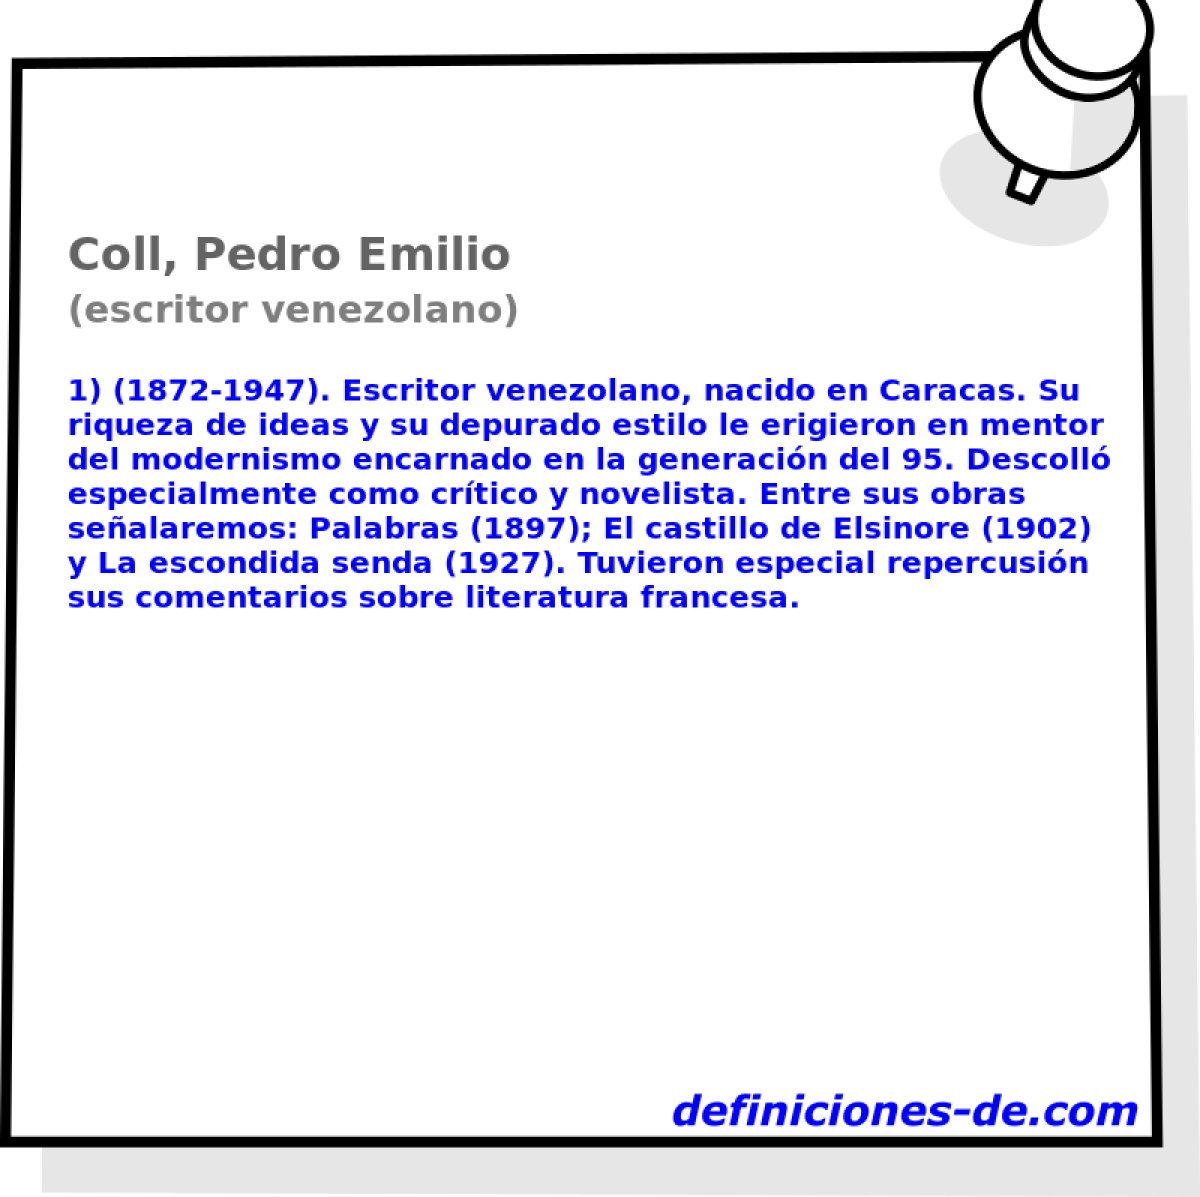 Coll, Pedro Emilio (escritor venezolano)